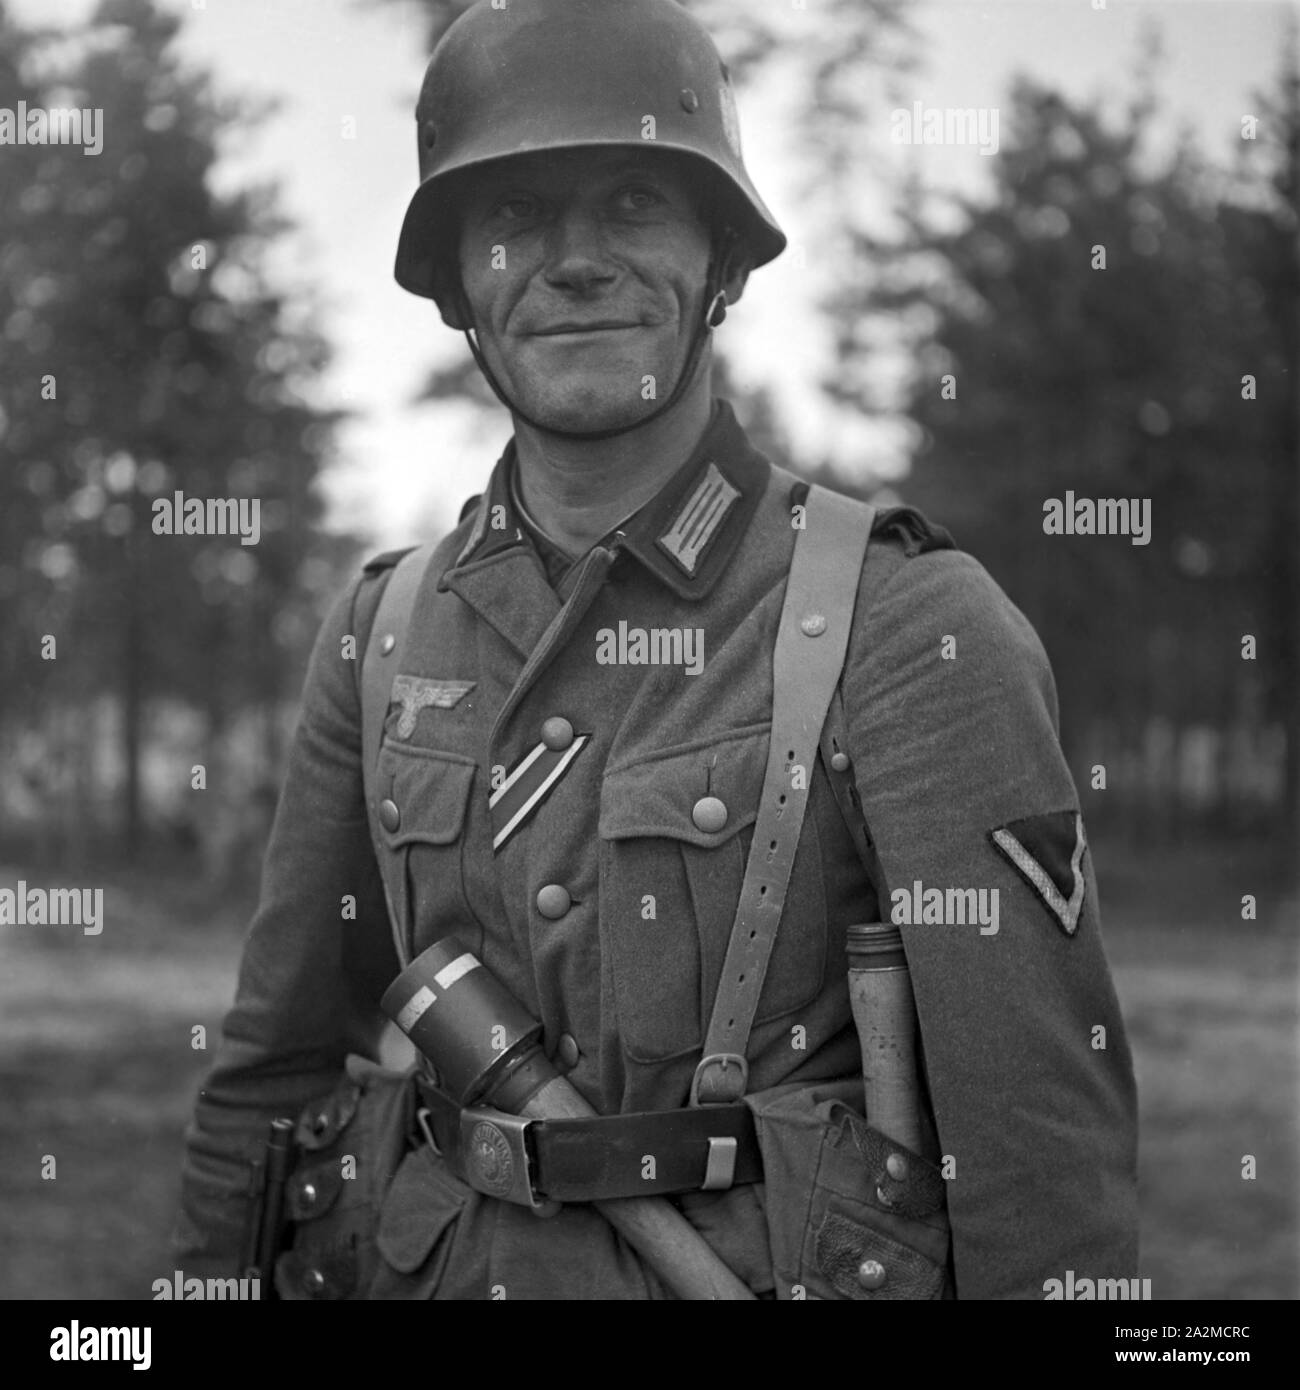 Original-Bildunterschrift: Sturmpionier aus den Kämpfen in Lothringen, Deutschland 1940er Jahre. Soldier of a military engineering unit from the battles of Lorraine, Germany 1940s. Stock Photo